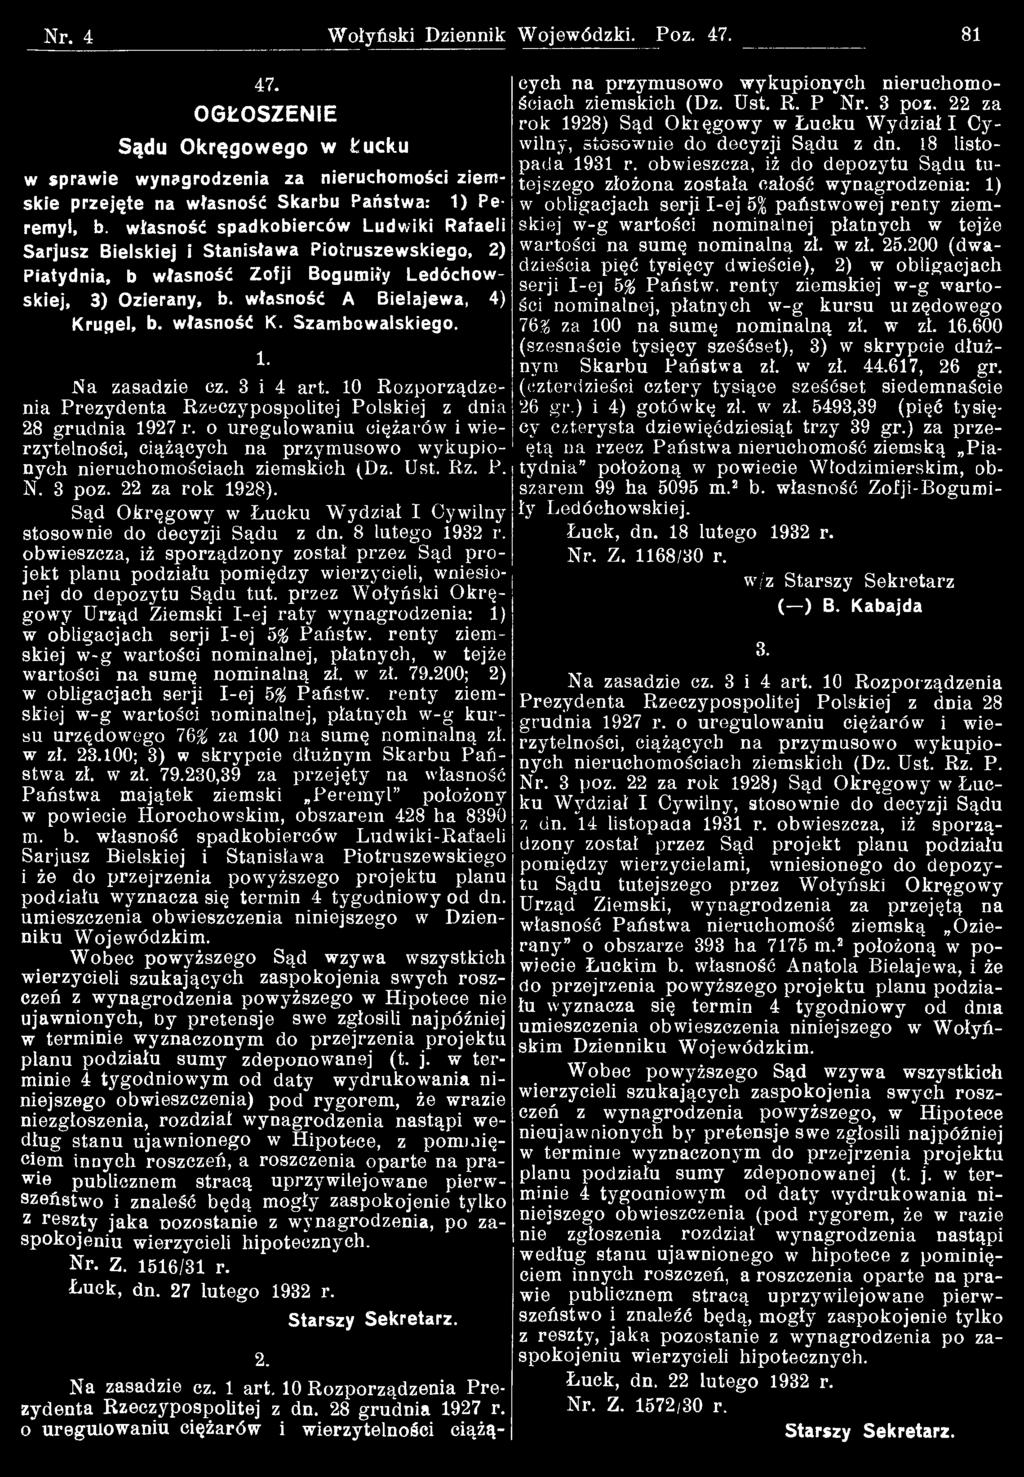 Sąd Okręgowy w Łucku Wydział I Cywilny stosownie do decyzji Sądu z dn. 8 lutego 1932 r.